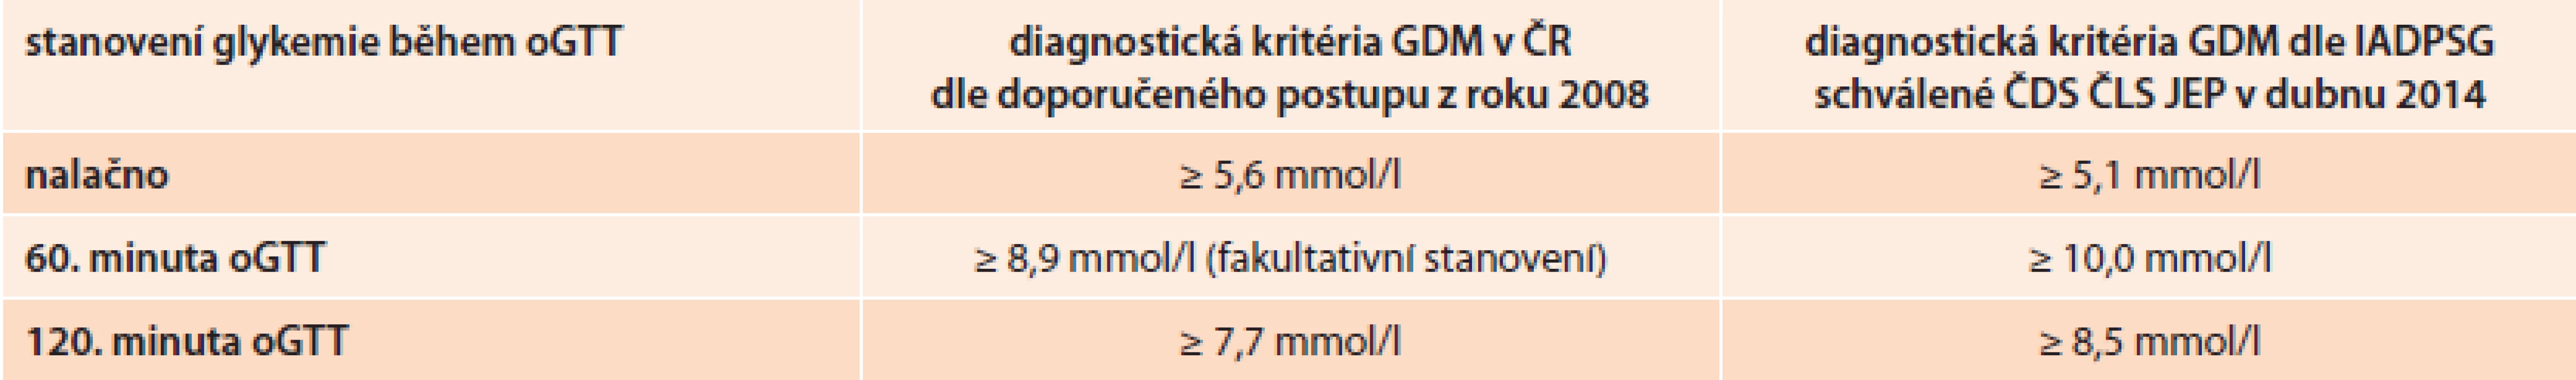 Srovnání diagnostických kritérií oGTT pro diagnózu GDM podle doporučeného postupu z roku 2008 a podle nového doporučeného postupu podle IADPSG schváleného ČDS ČLS JEP v dubnu 2014.